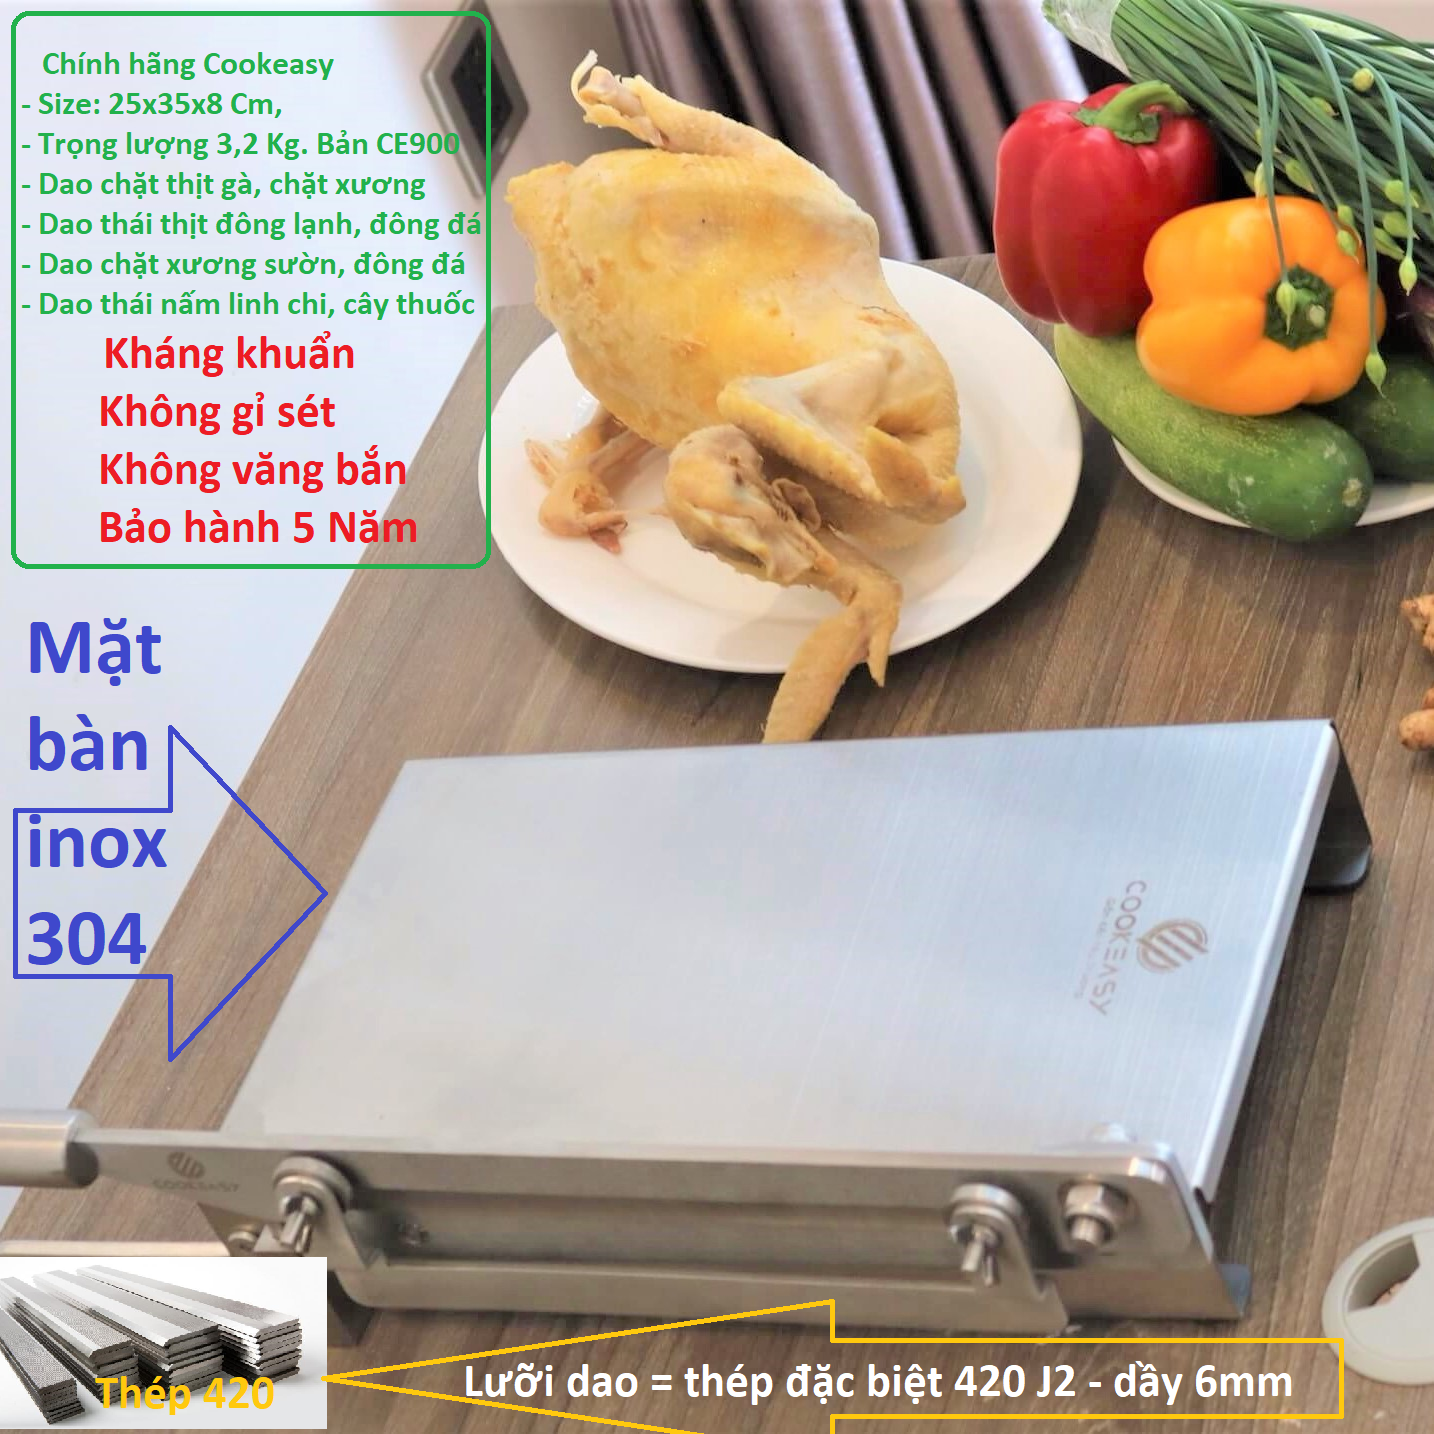 máy cắt thịt đông lạnh, cắt gà, cắt xương đa năng cầm tay hàng chính hãng cookeasy. bản dao chặt gà cao cấp ce900 7